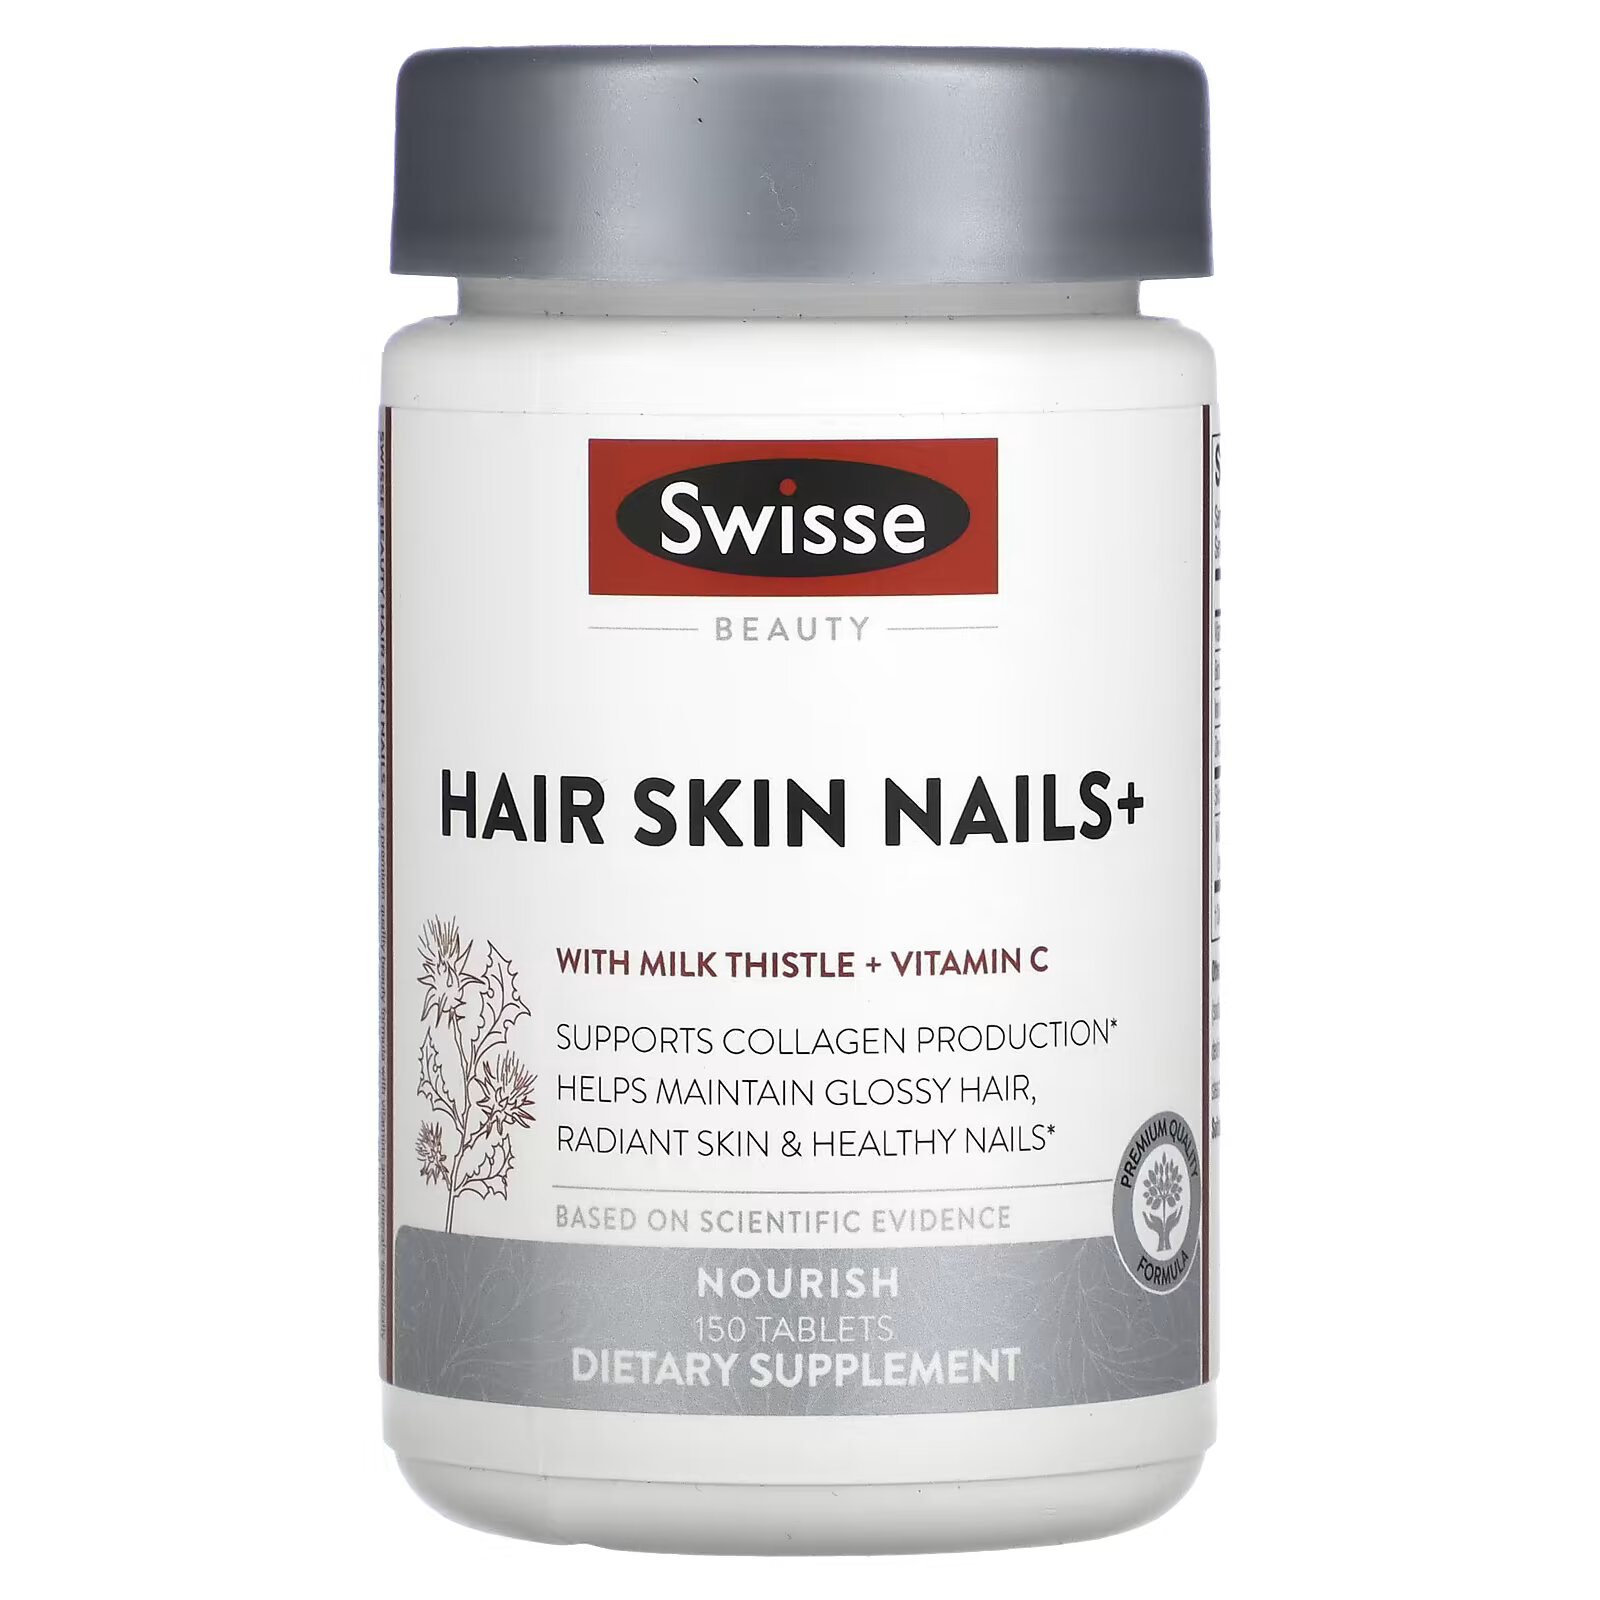 Swisse, Ultiboost, добавка для здоровья волос, кожи и ногтей Hair Skin Nails+, 150 таблеток swisse ultiboost добавка для здоровья волос кожи и ногтей hair skin nails 150 таблеток